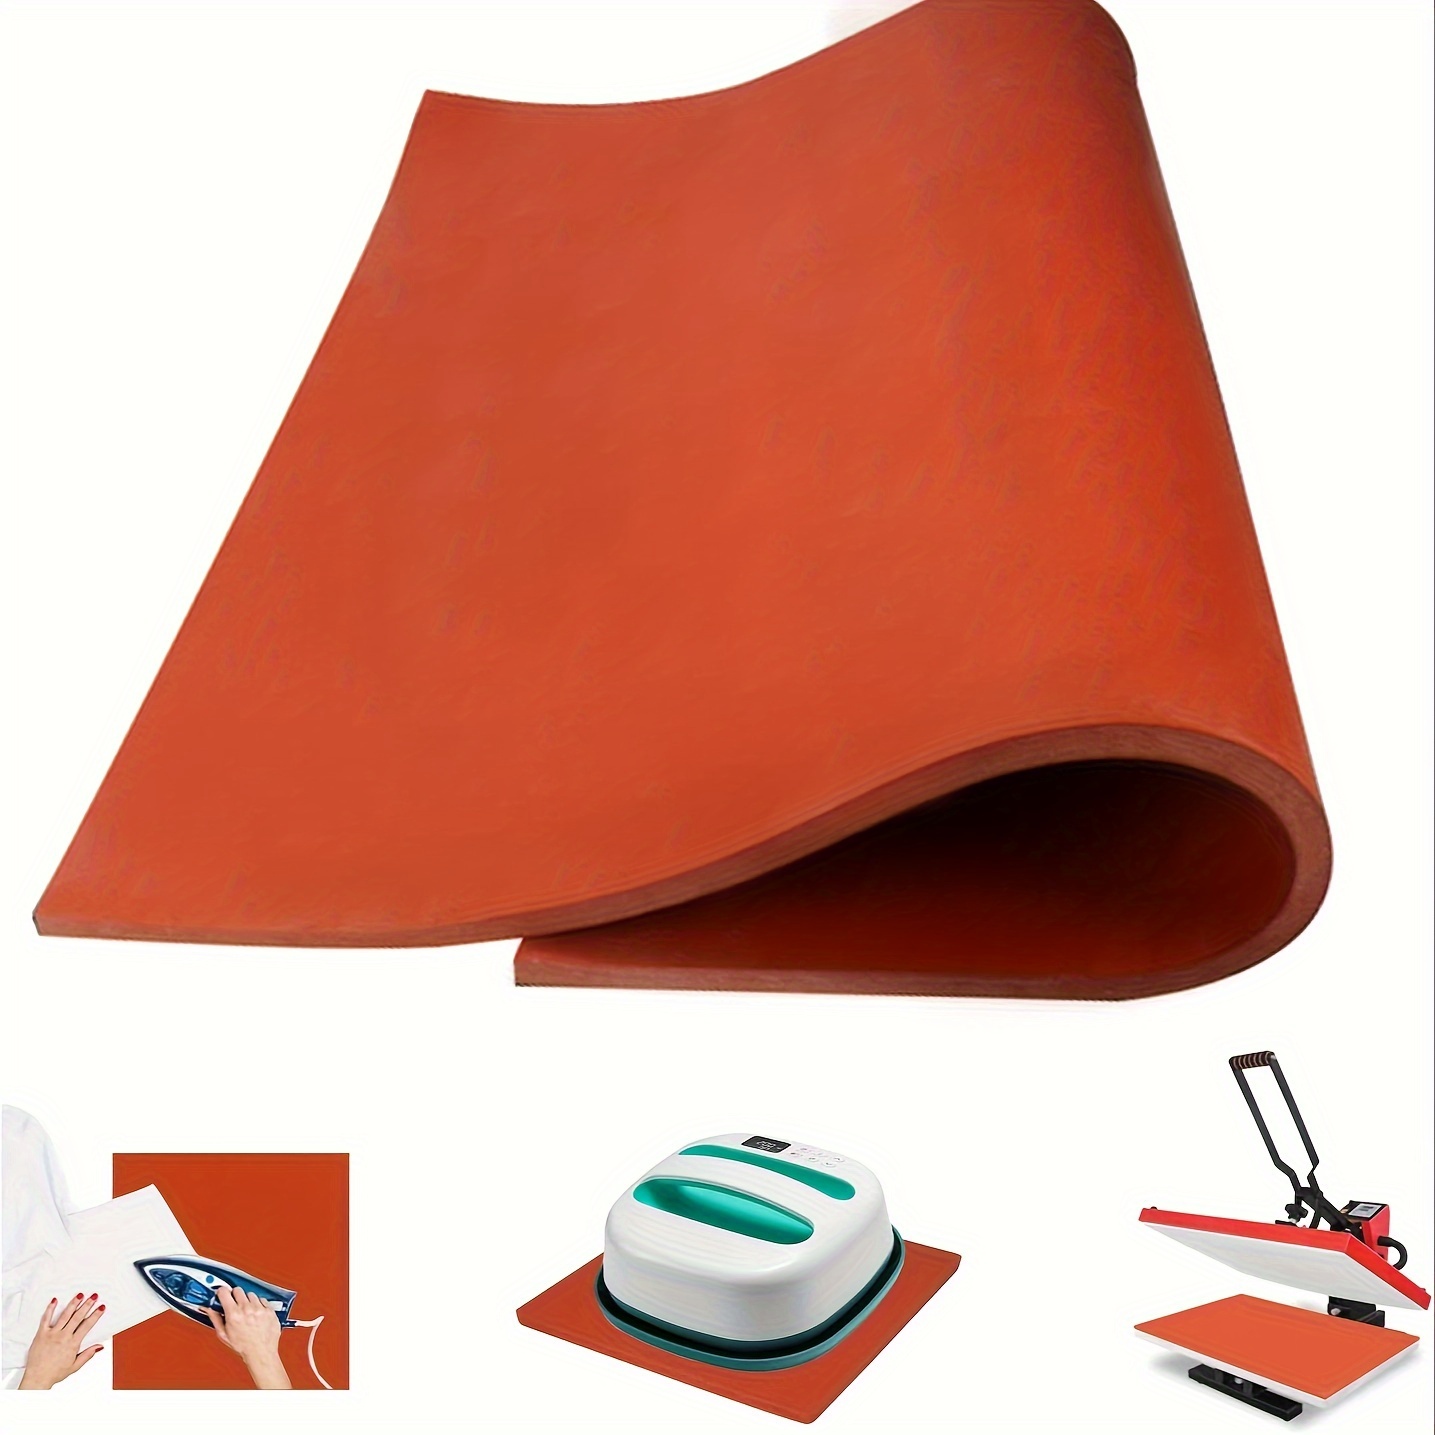 Polyurethane Foam Sheet Cuttable Foam Inserts For Cases - Temu